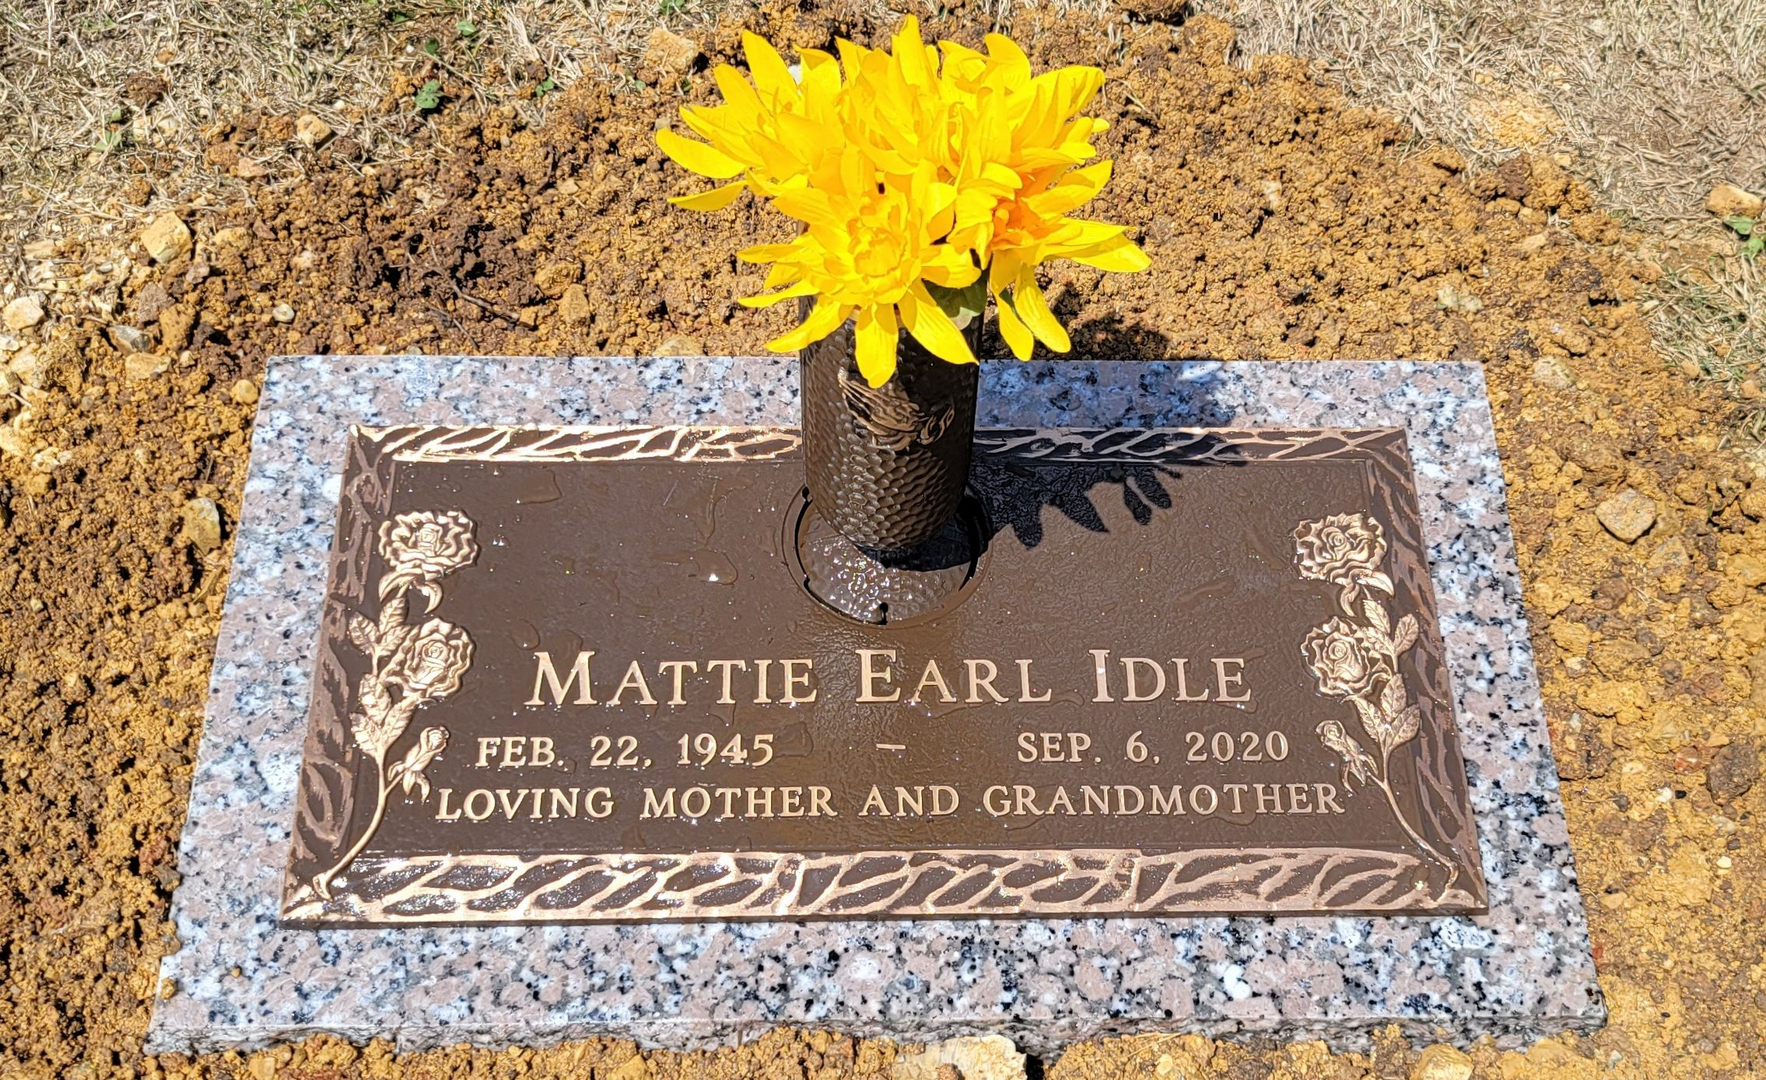 Mattie Earl Idle Memorial Plaque WIth a Vase